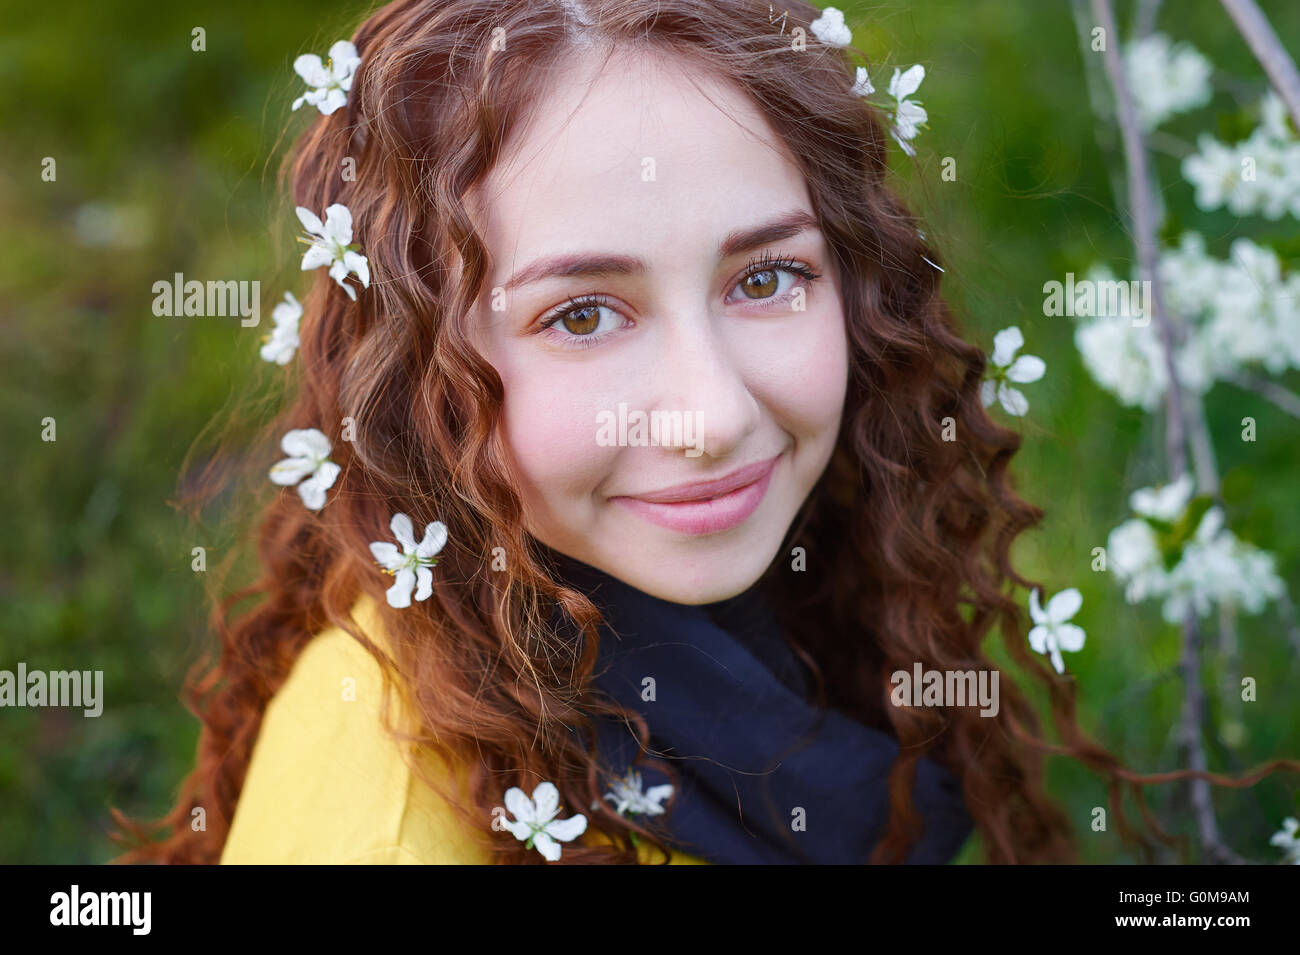 Portrait de jeune femme belle dans les arbres en fleurs au printemps Banque D'Images